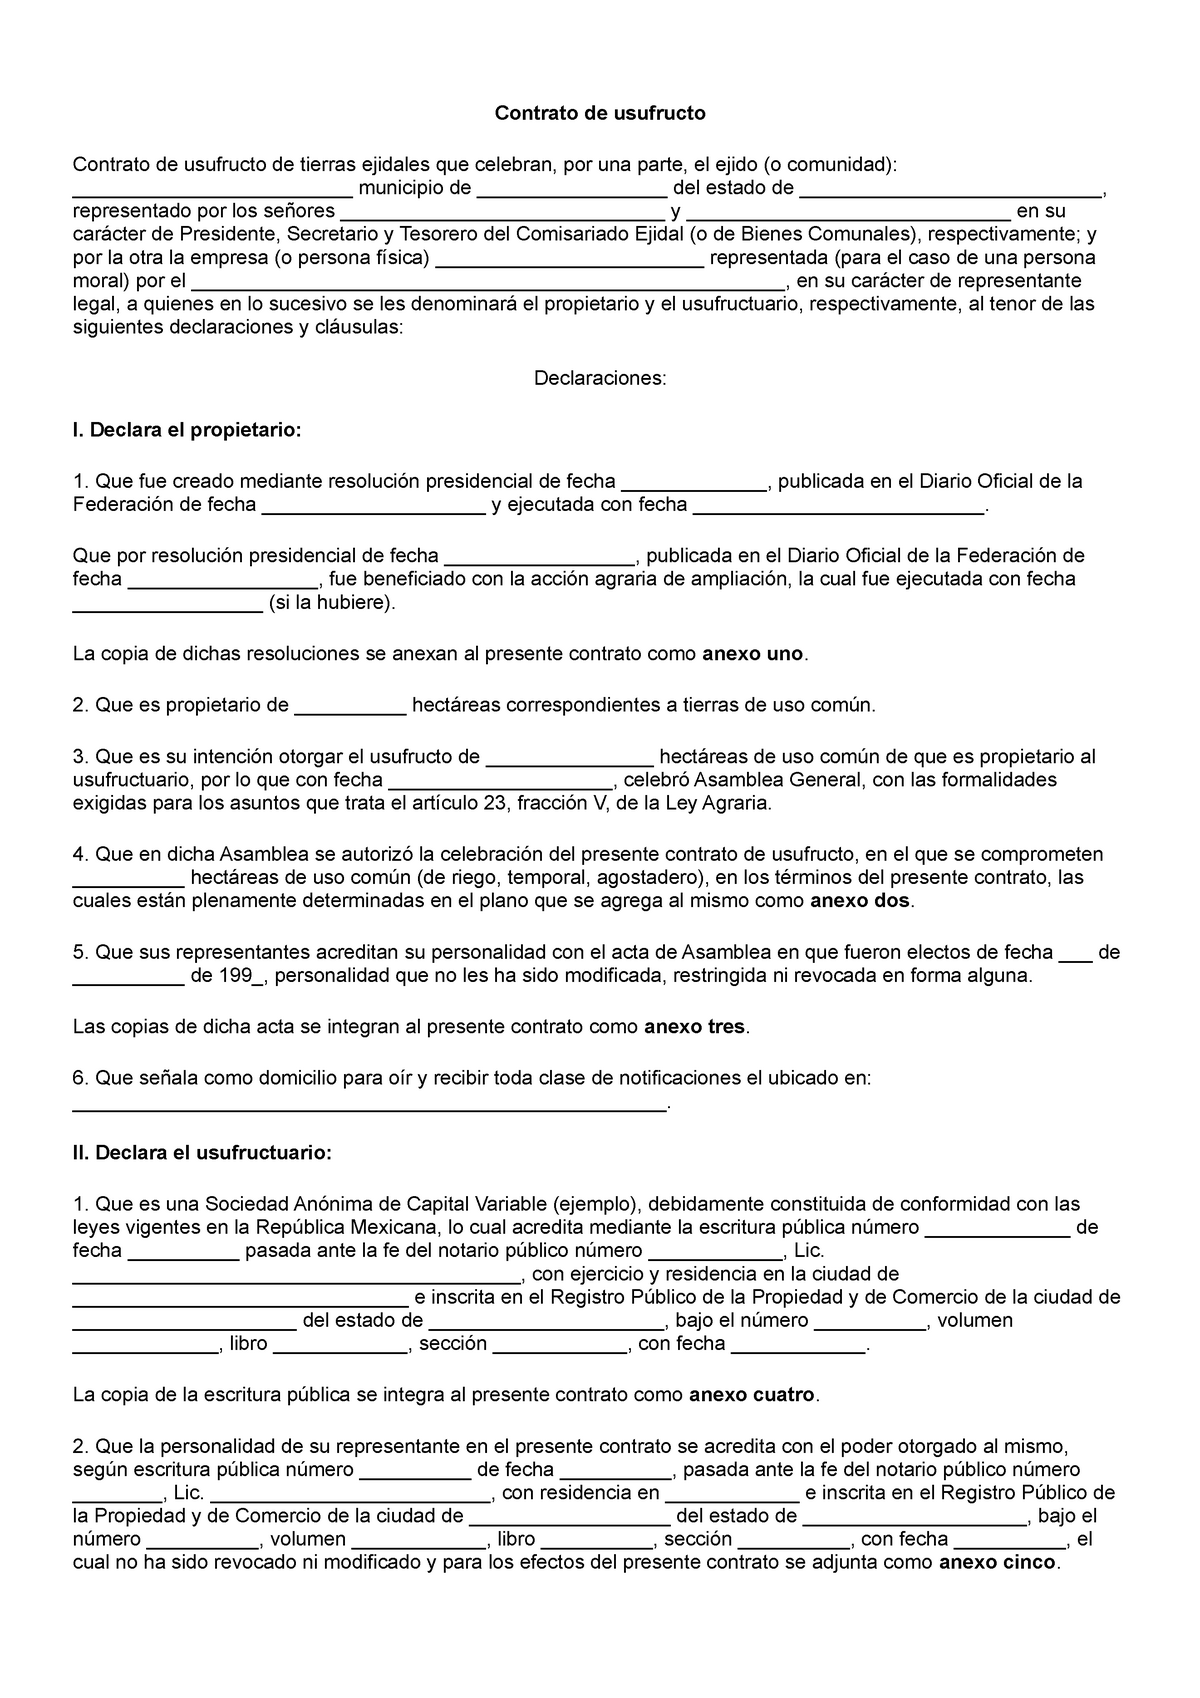 Contrato usufructo 2 - Contrato de usufructo Contrato de usufructo de  tierras ejidales que celebran, - Studocu